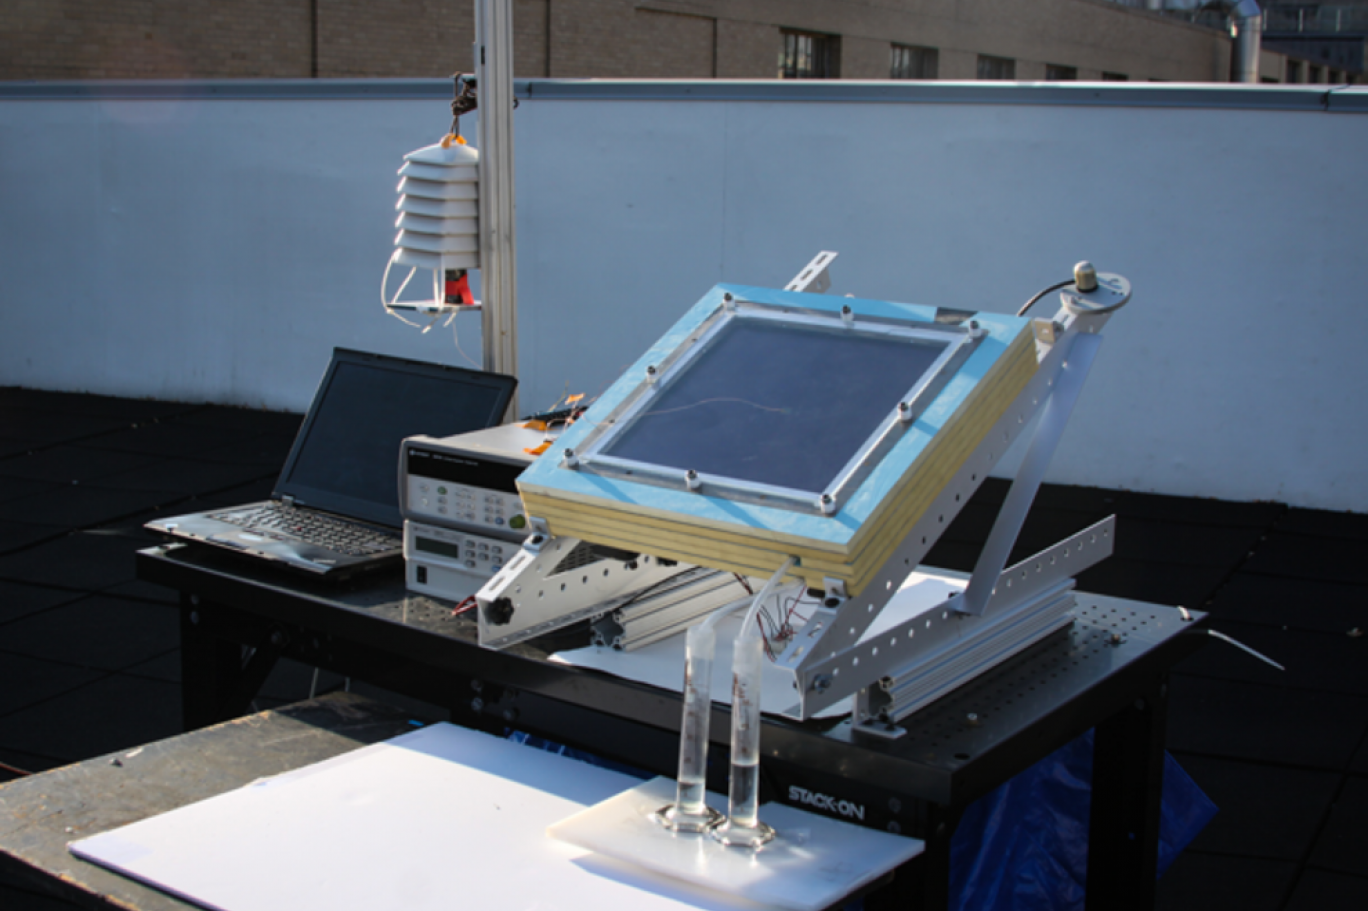 يعمل أيضا بالمناطق الجافة.. ابتكار جهاز لاستخراج الماء من الهواء بواسطة الطاقة الشمسية